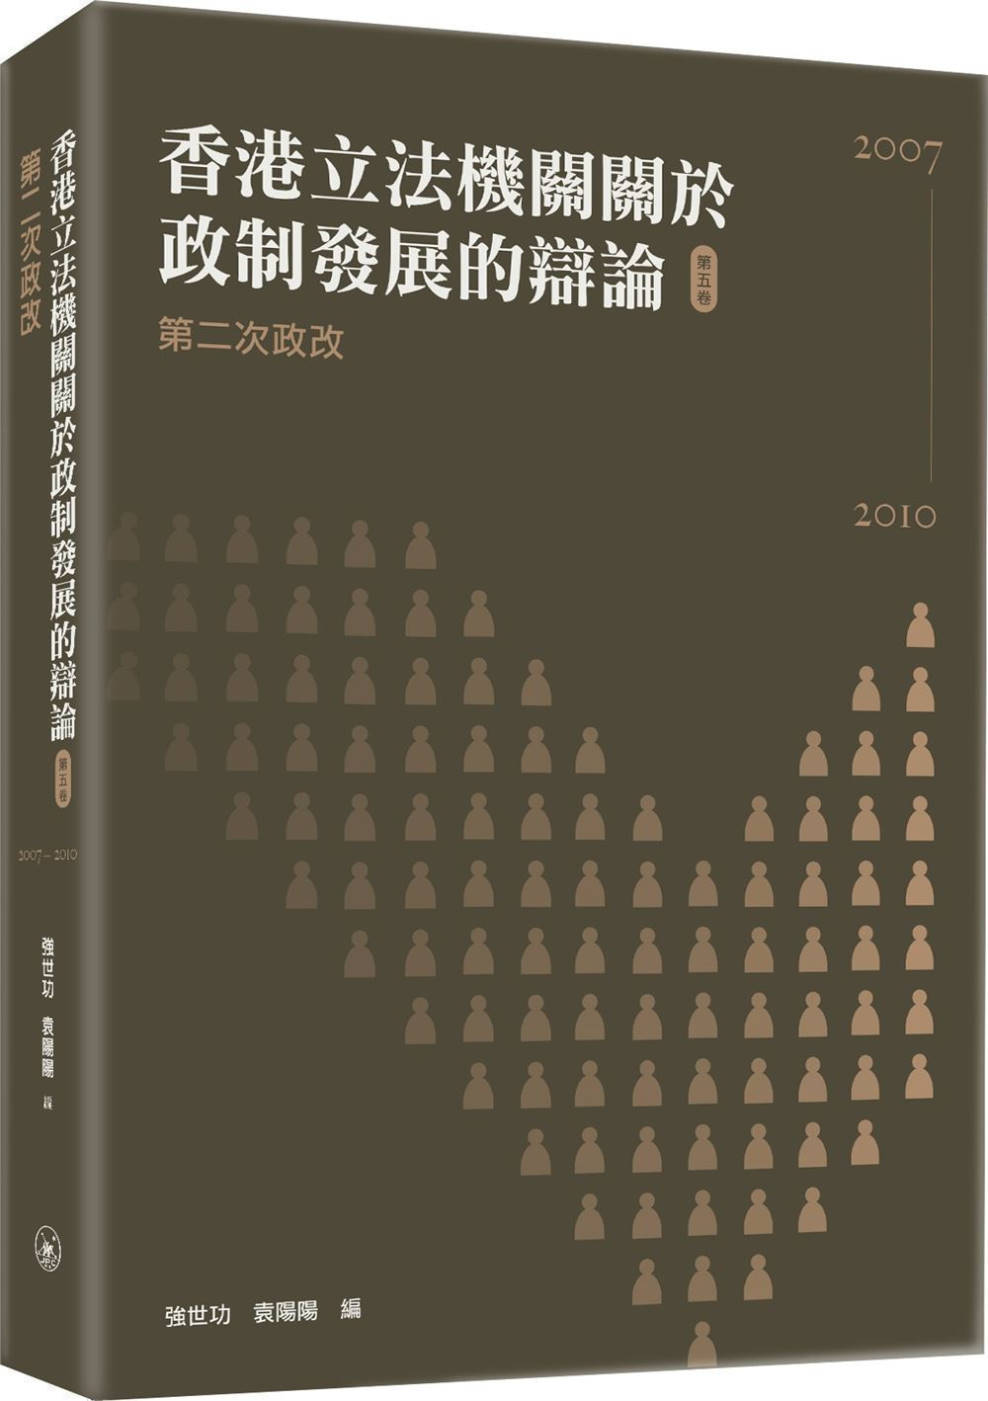 香港立法機關關於政制發展的辯論（第五卷）第二次政改（2007...